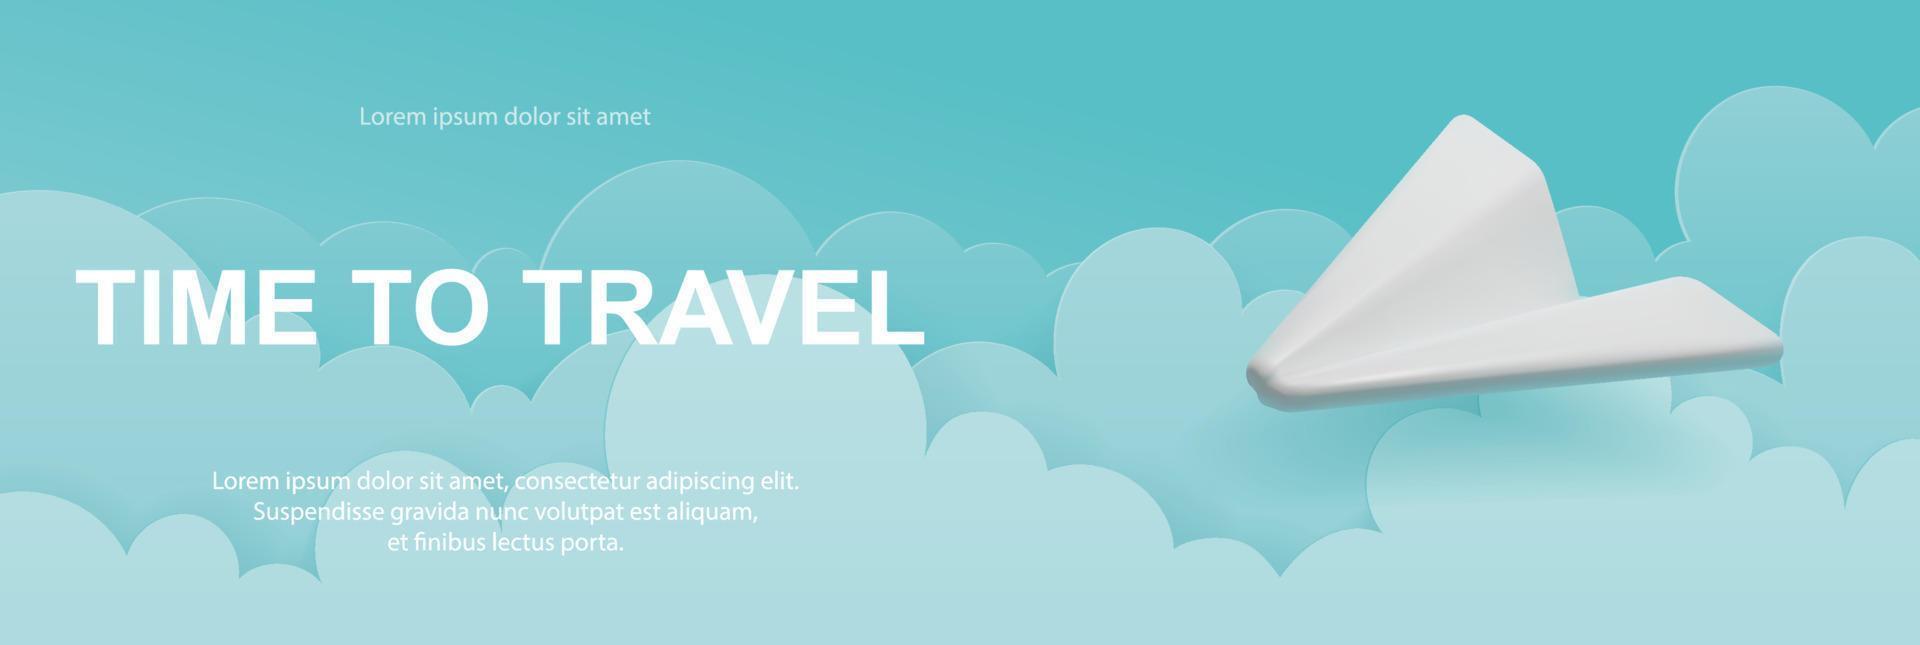 vektor banner med ett flygplan på himlen med moln. realistisk 3d-design och pappersklipp. semester koncept, dags att resa